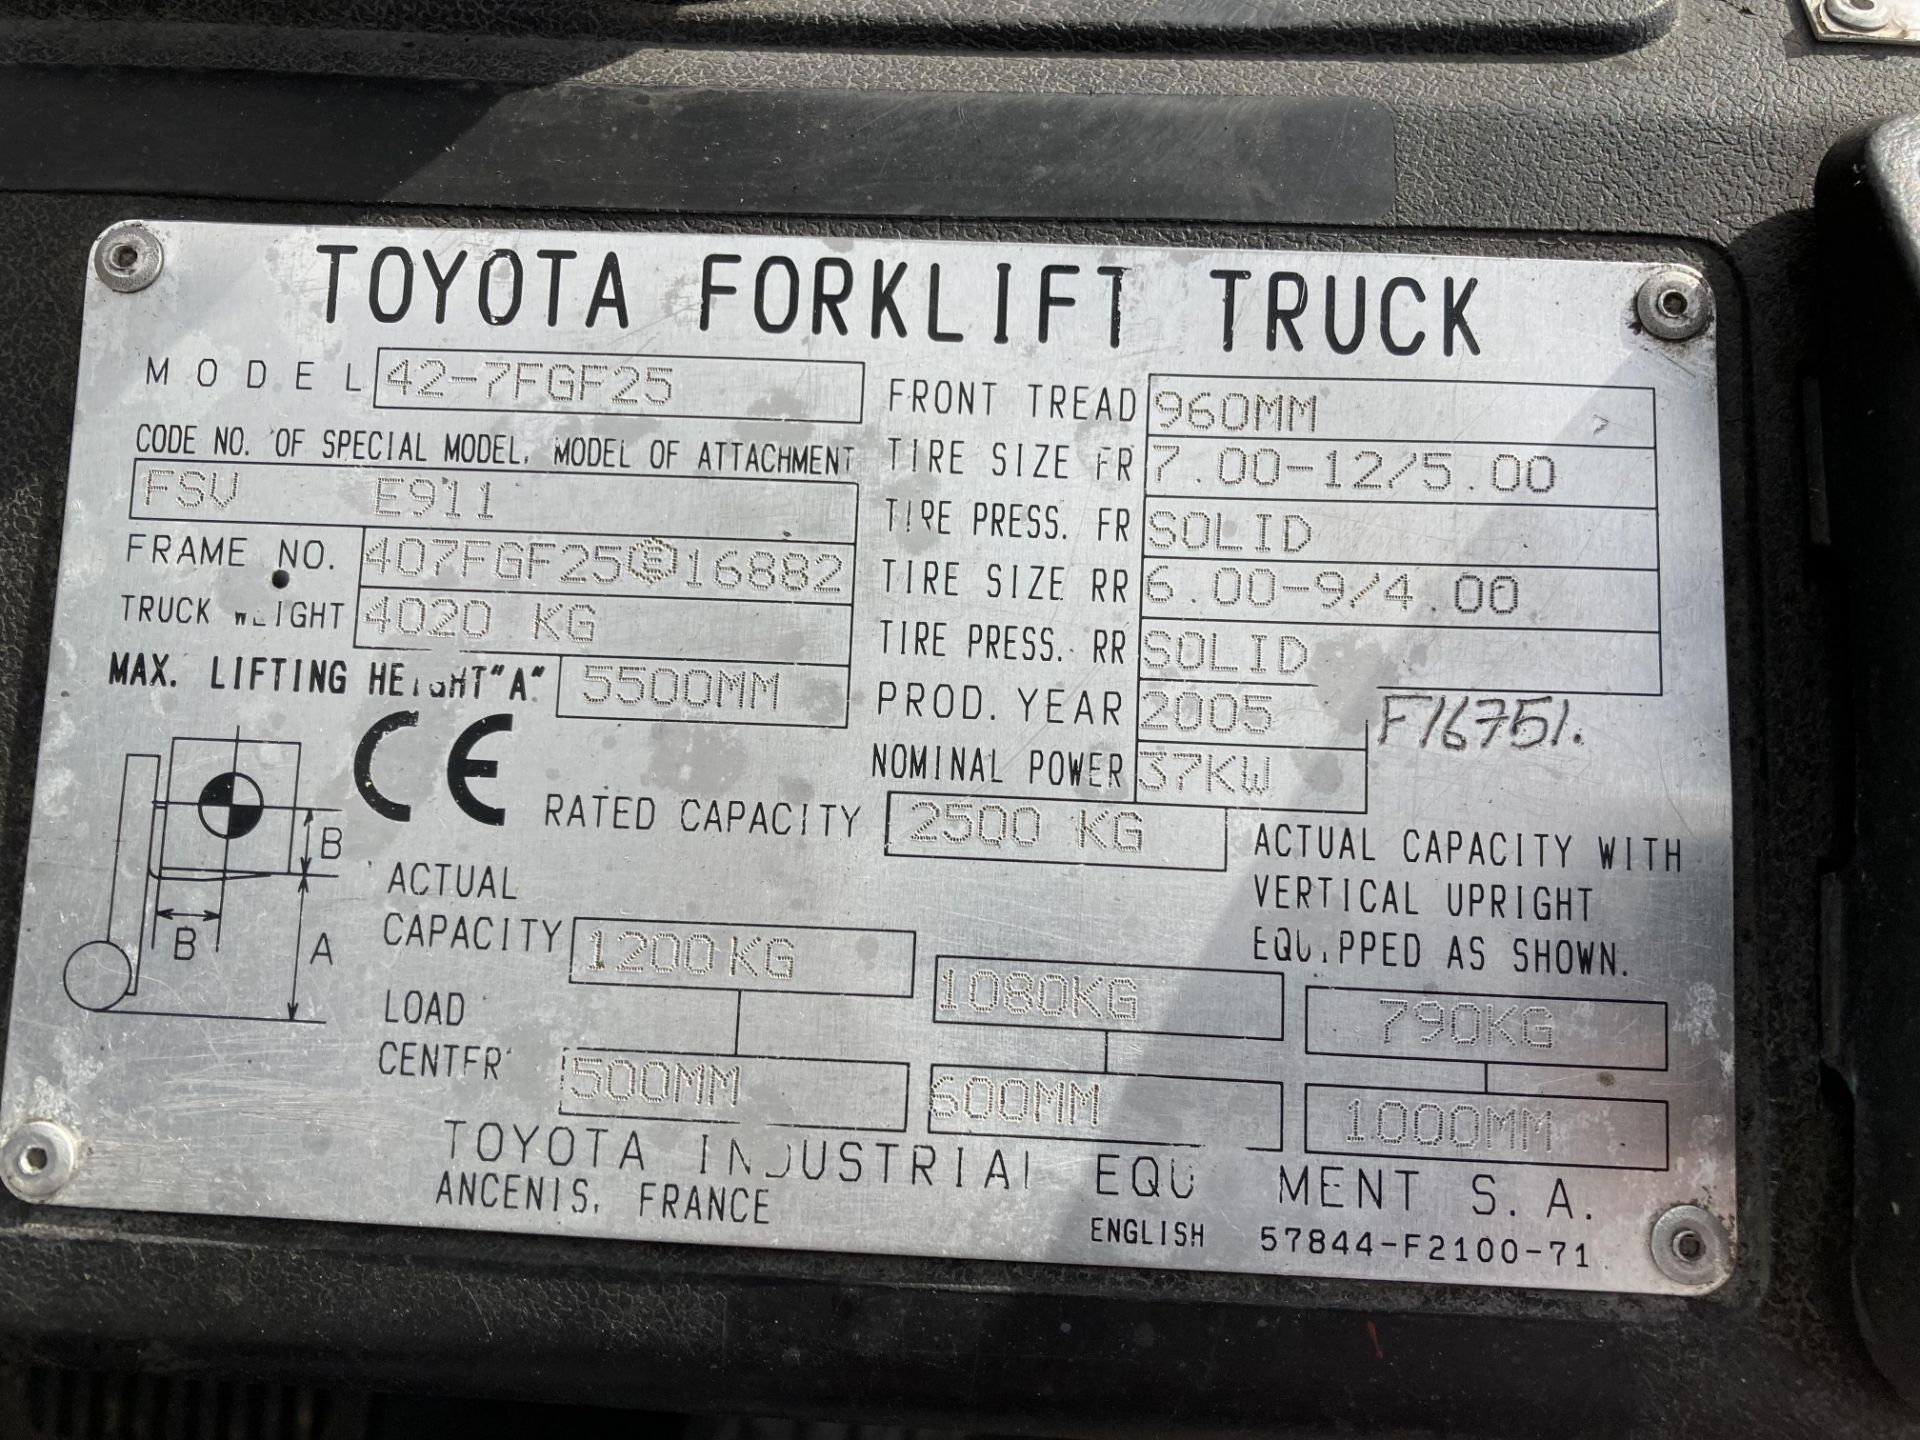 TOYOTA 2.5 tonne gas forklift truck - model no: 42-7FGF25 - orange/black. - Image 4 of 4